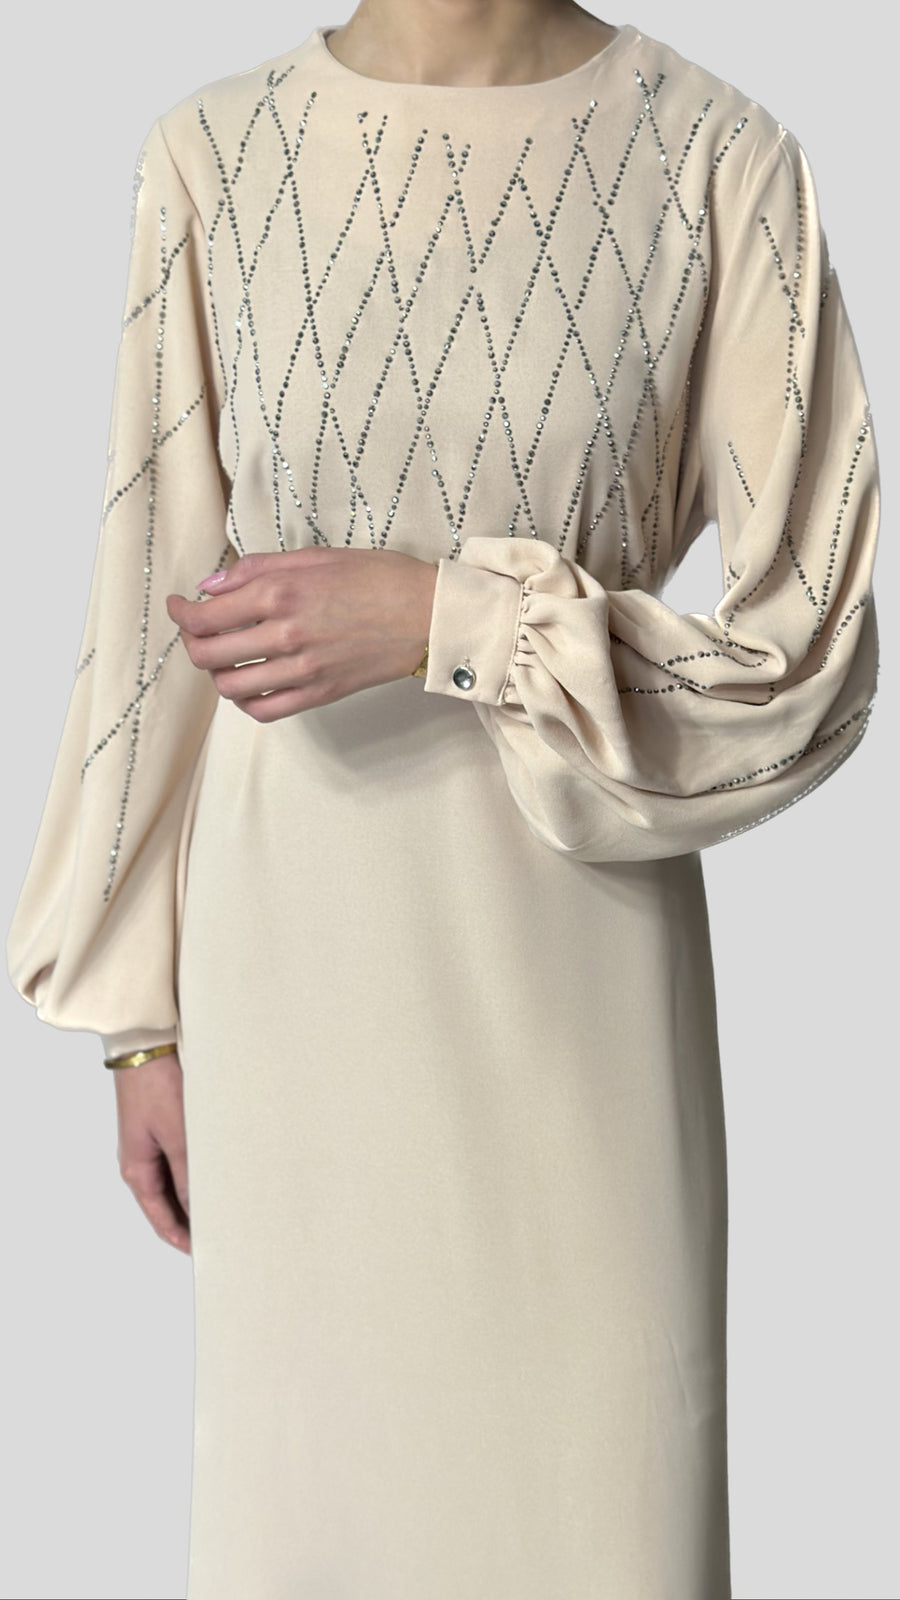 Gemstone Abaya Dress